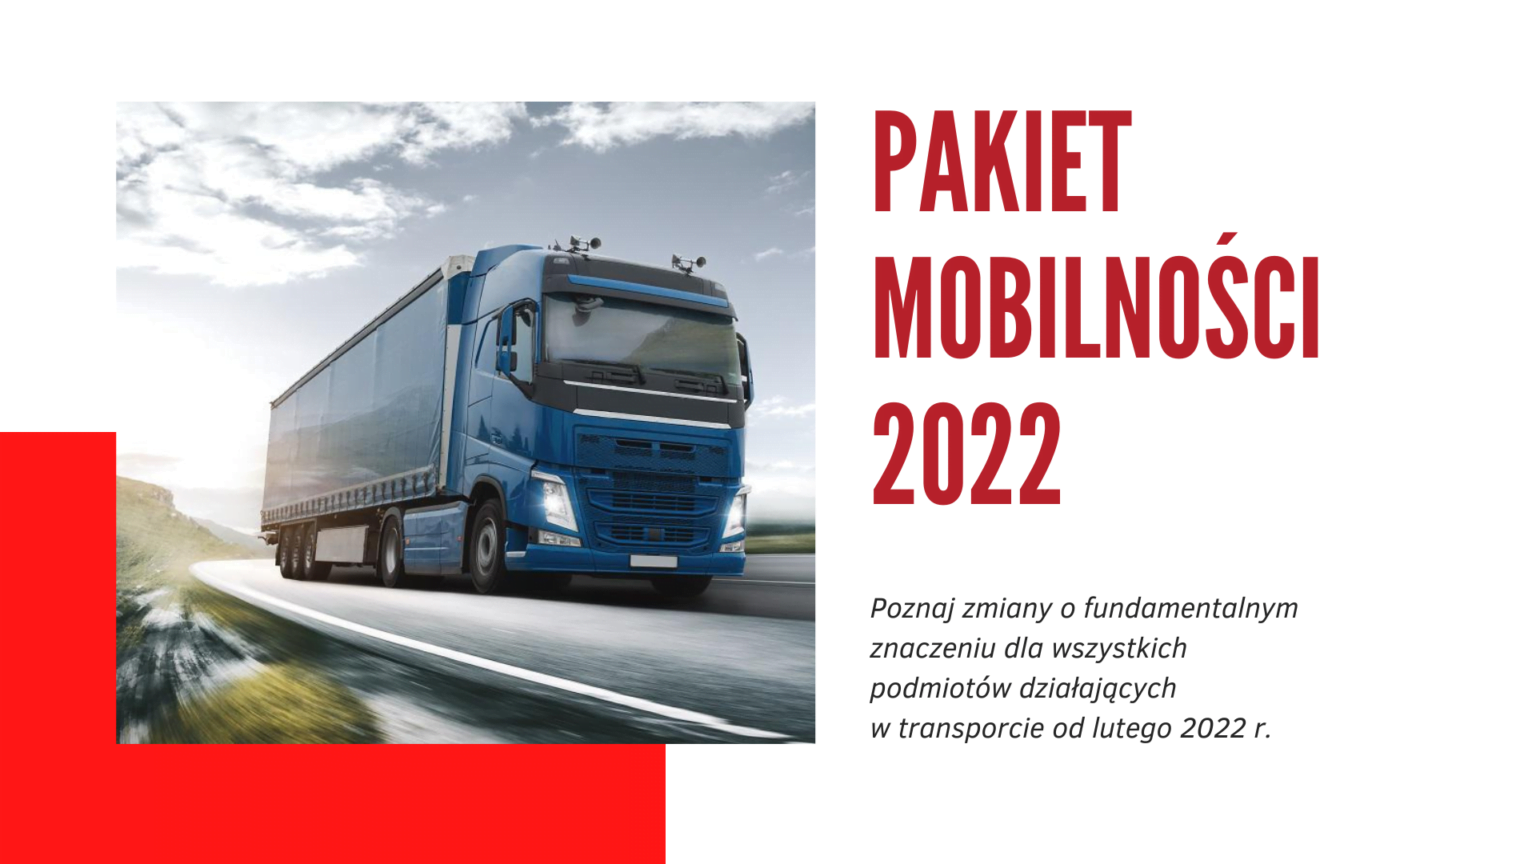 Pakiet Mobilności 2022 – rewolucja w transporcie